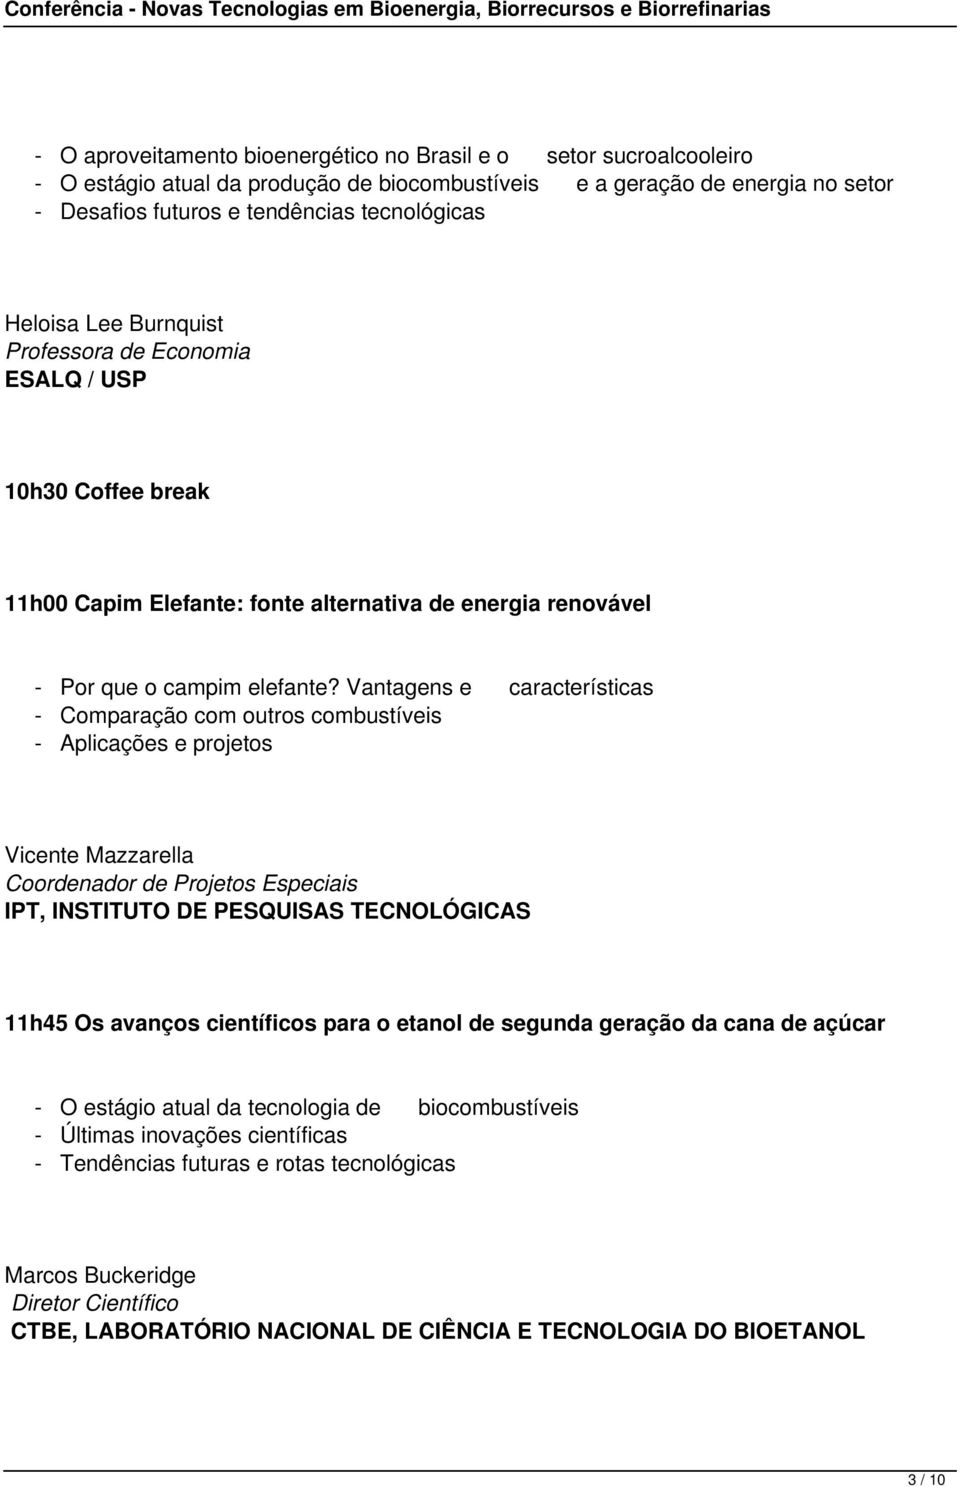 Vantagens e características - Comparação com outros combustíveis - Aplicações e projetos Vicente Mazzarella Coordenador de Projetos Especiais IPT, INSTITUTO DE PESQUISAS TECNOLÓGICAS 11h45 Os avanços